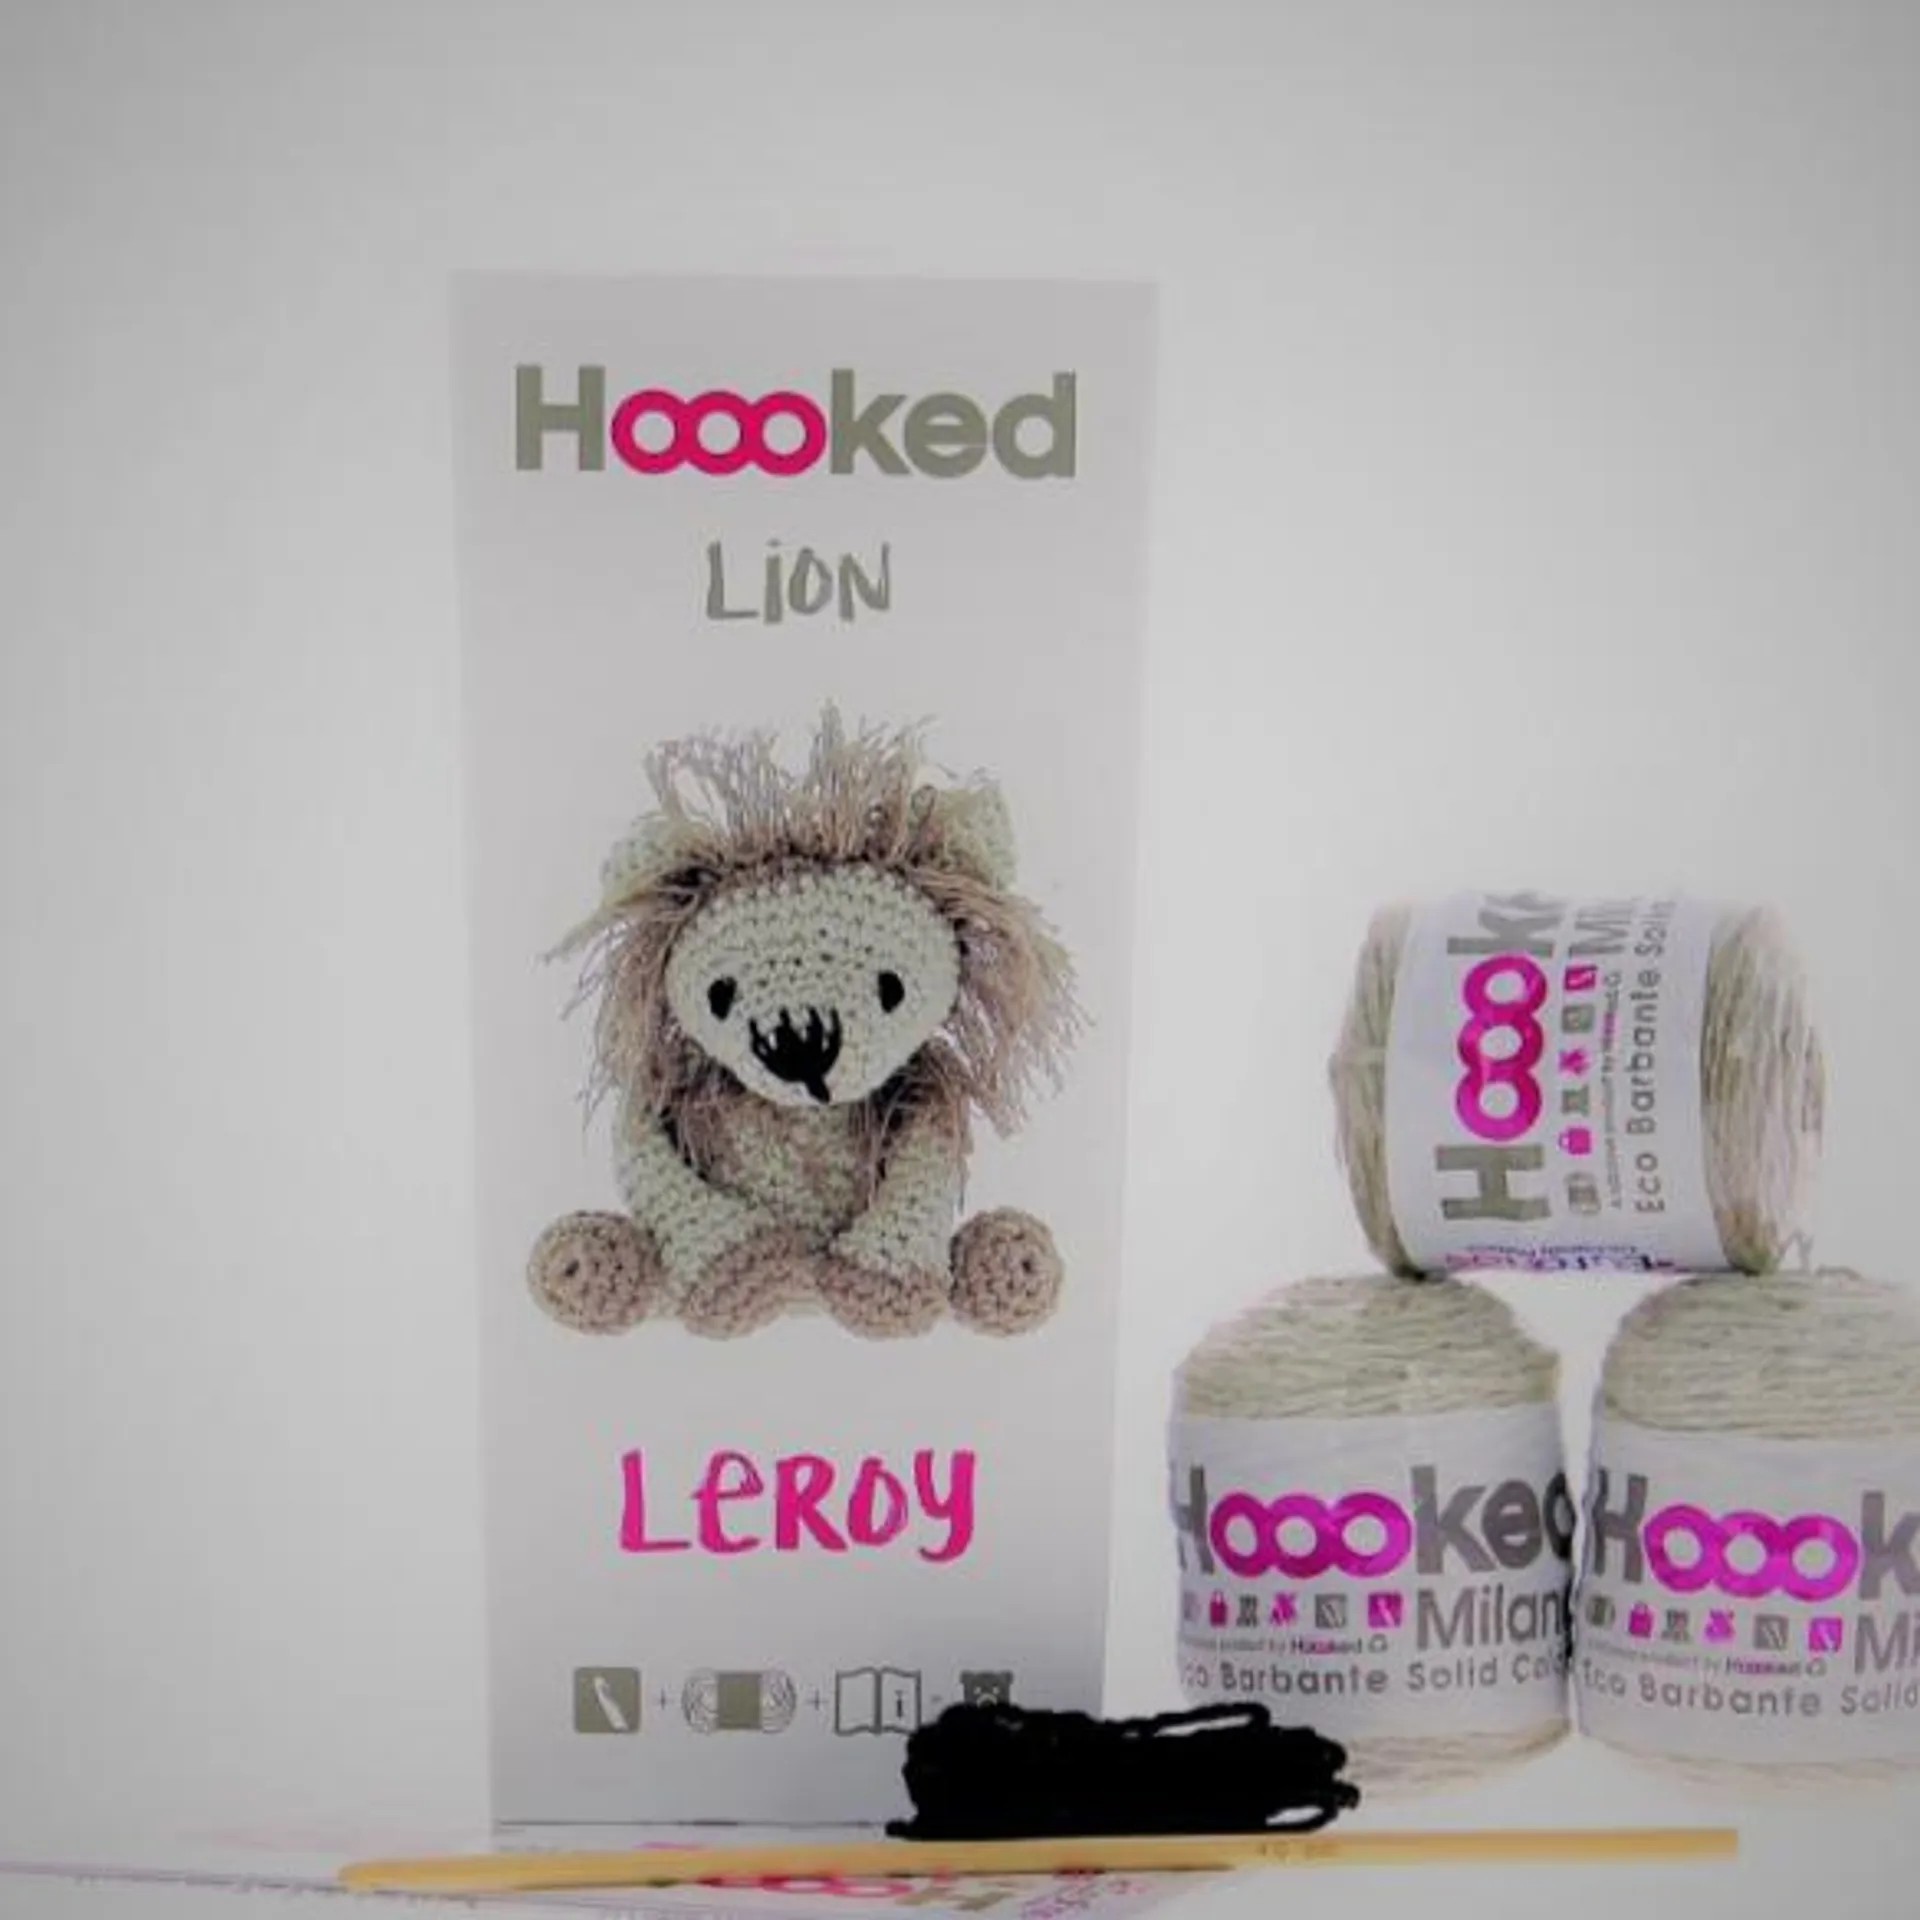 Leroy Lion - Crochet Kit - Hoooked Eco Barbante